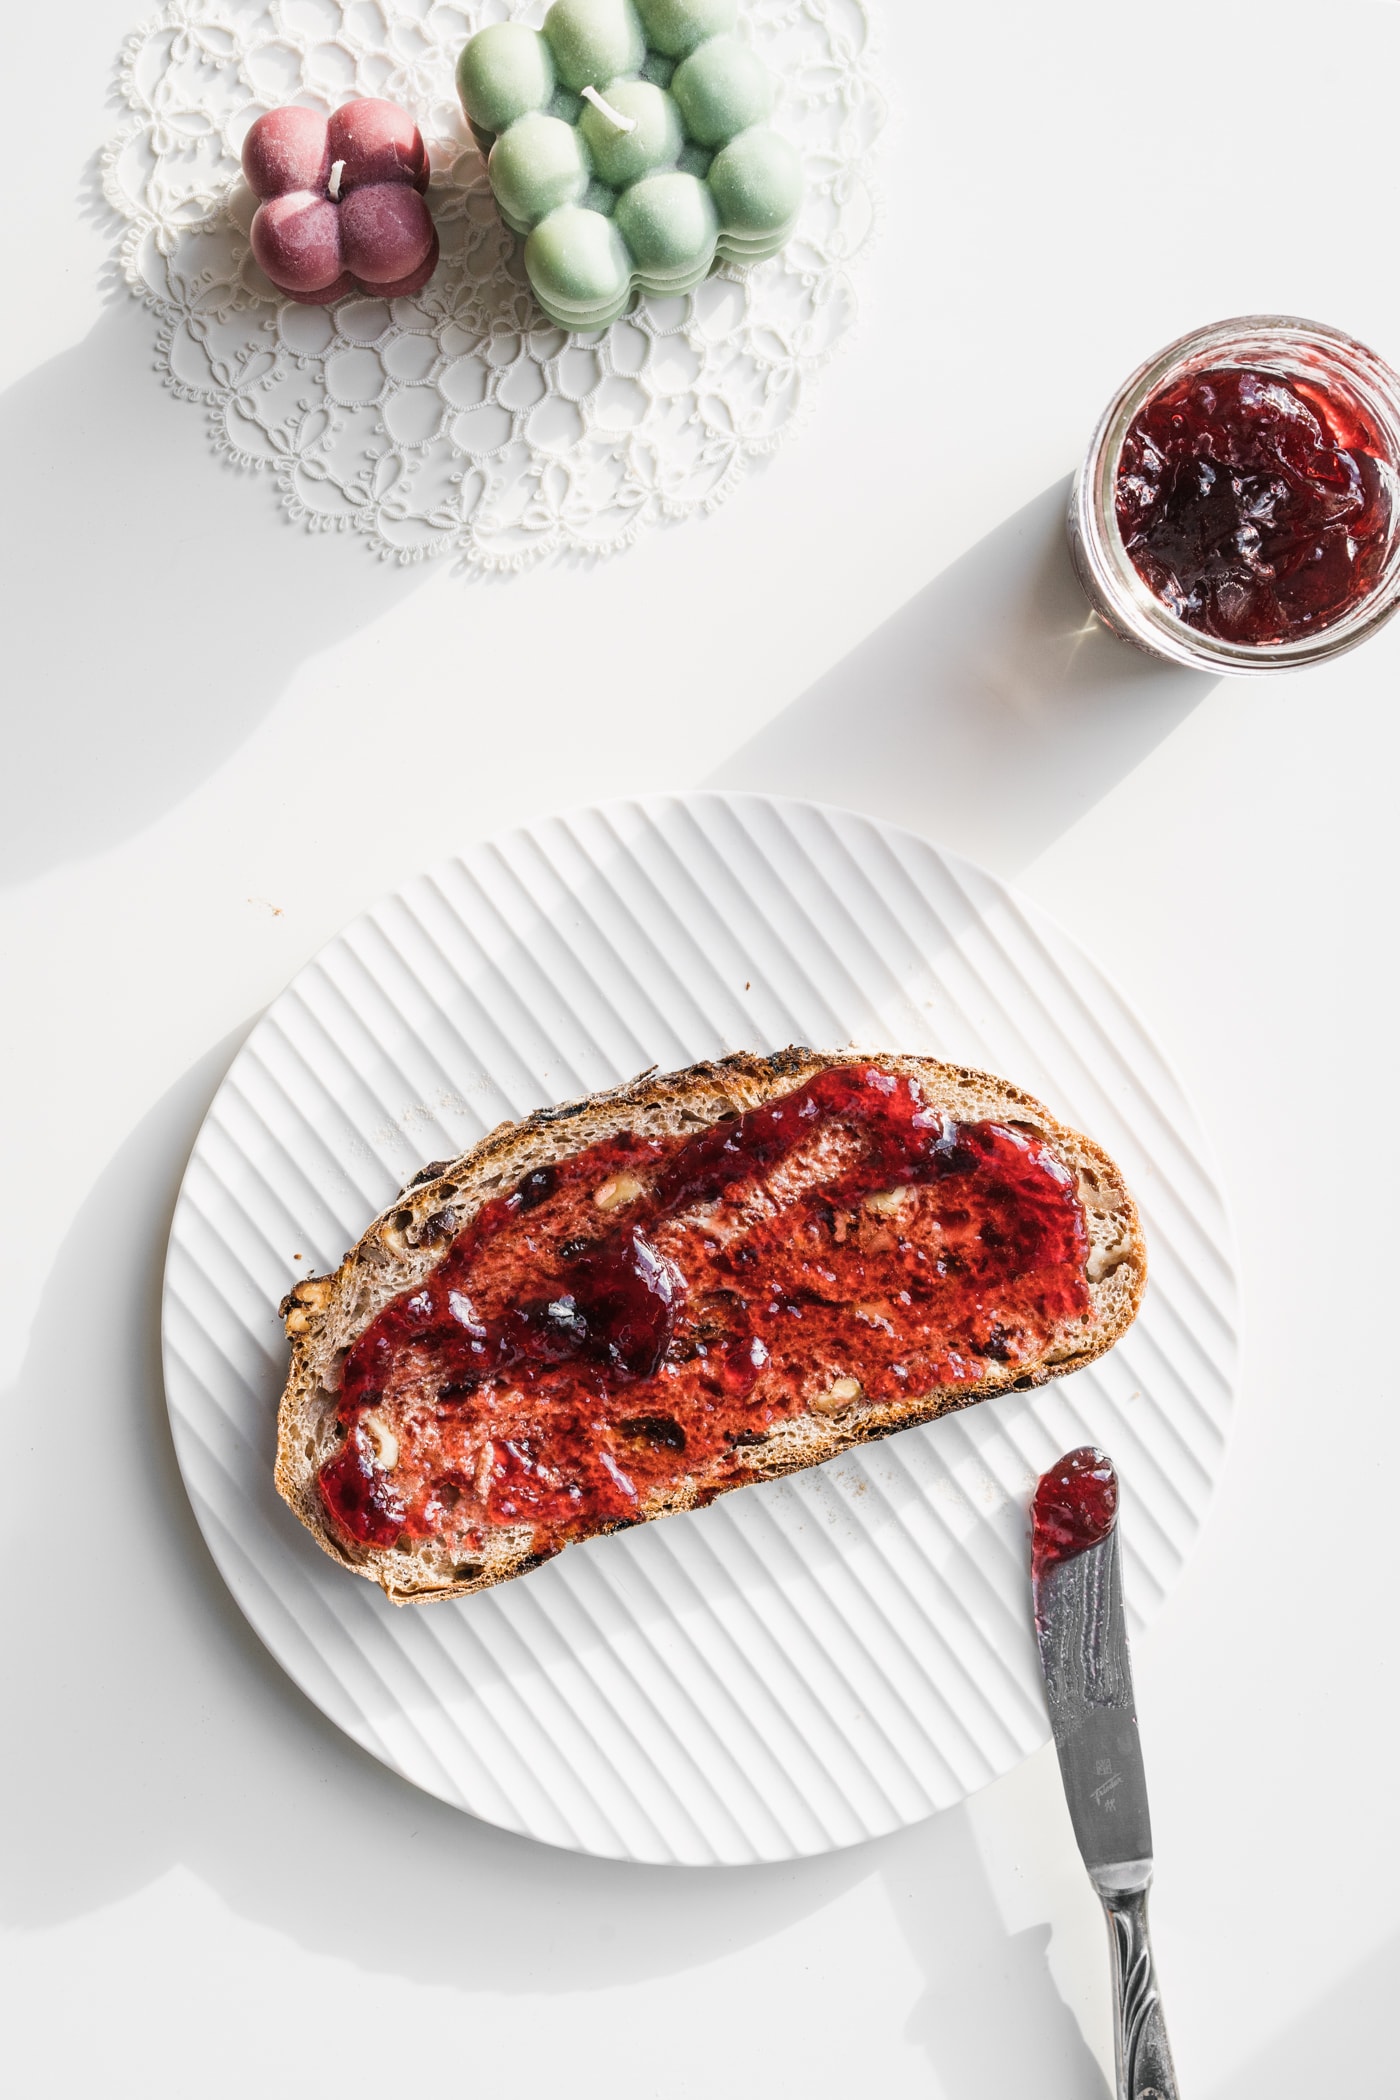 Cranberry-Walnuss-Brot mit Glühweingelee